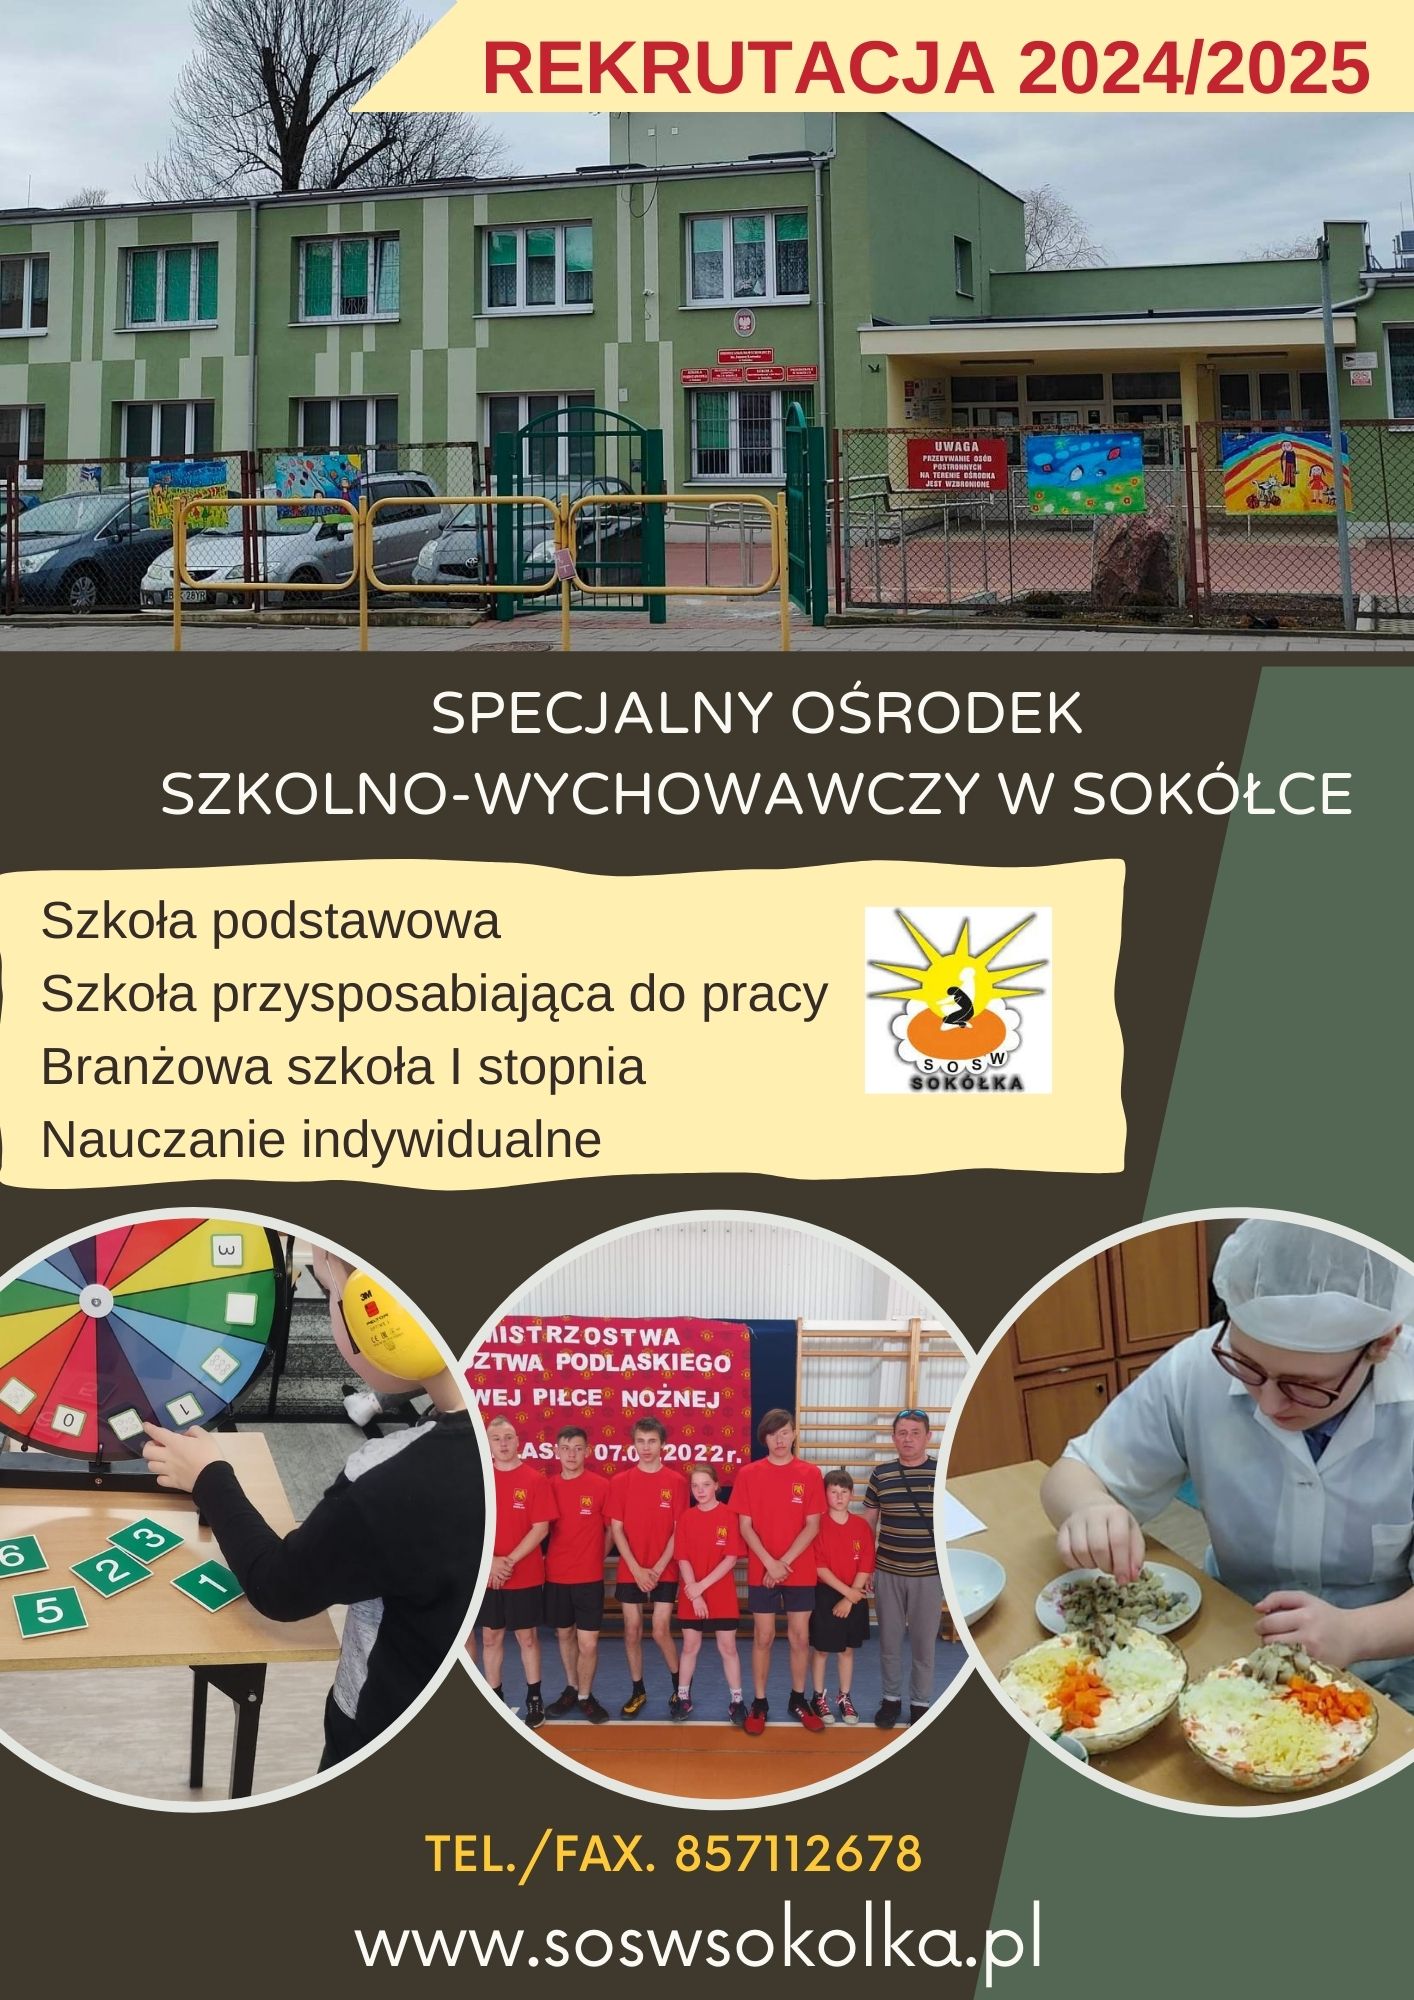 https://www.soswsokolka.pl/images/jasna_ta_pomaraczowa_biaa_due_zdjcie_dynamiczne_ramki_ulotka_wydarzenie.jpg